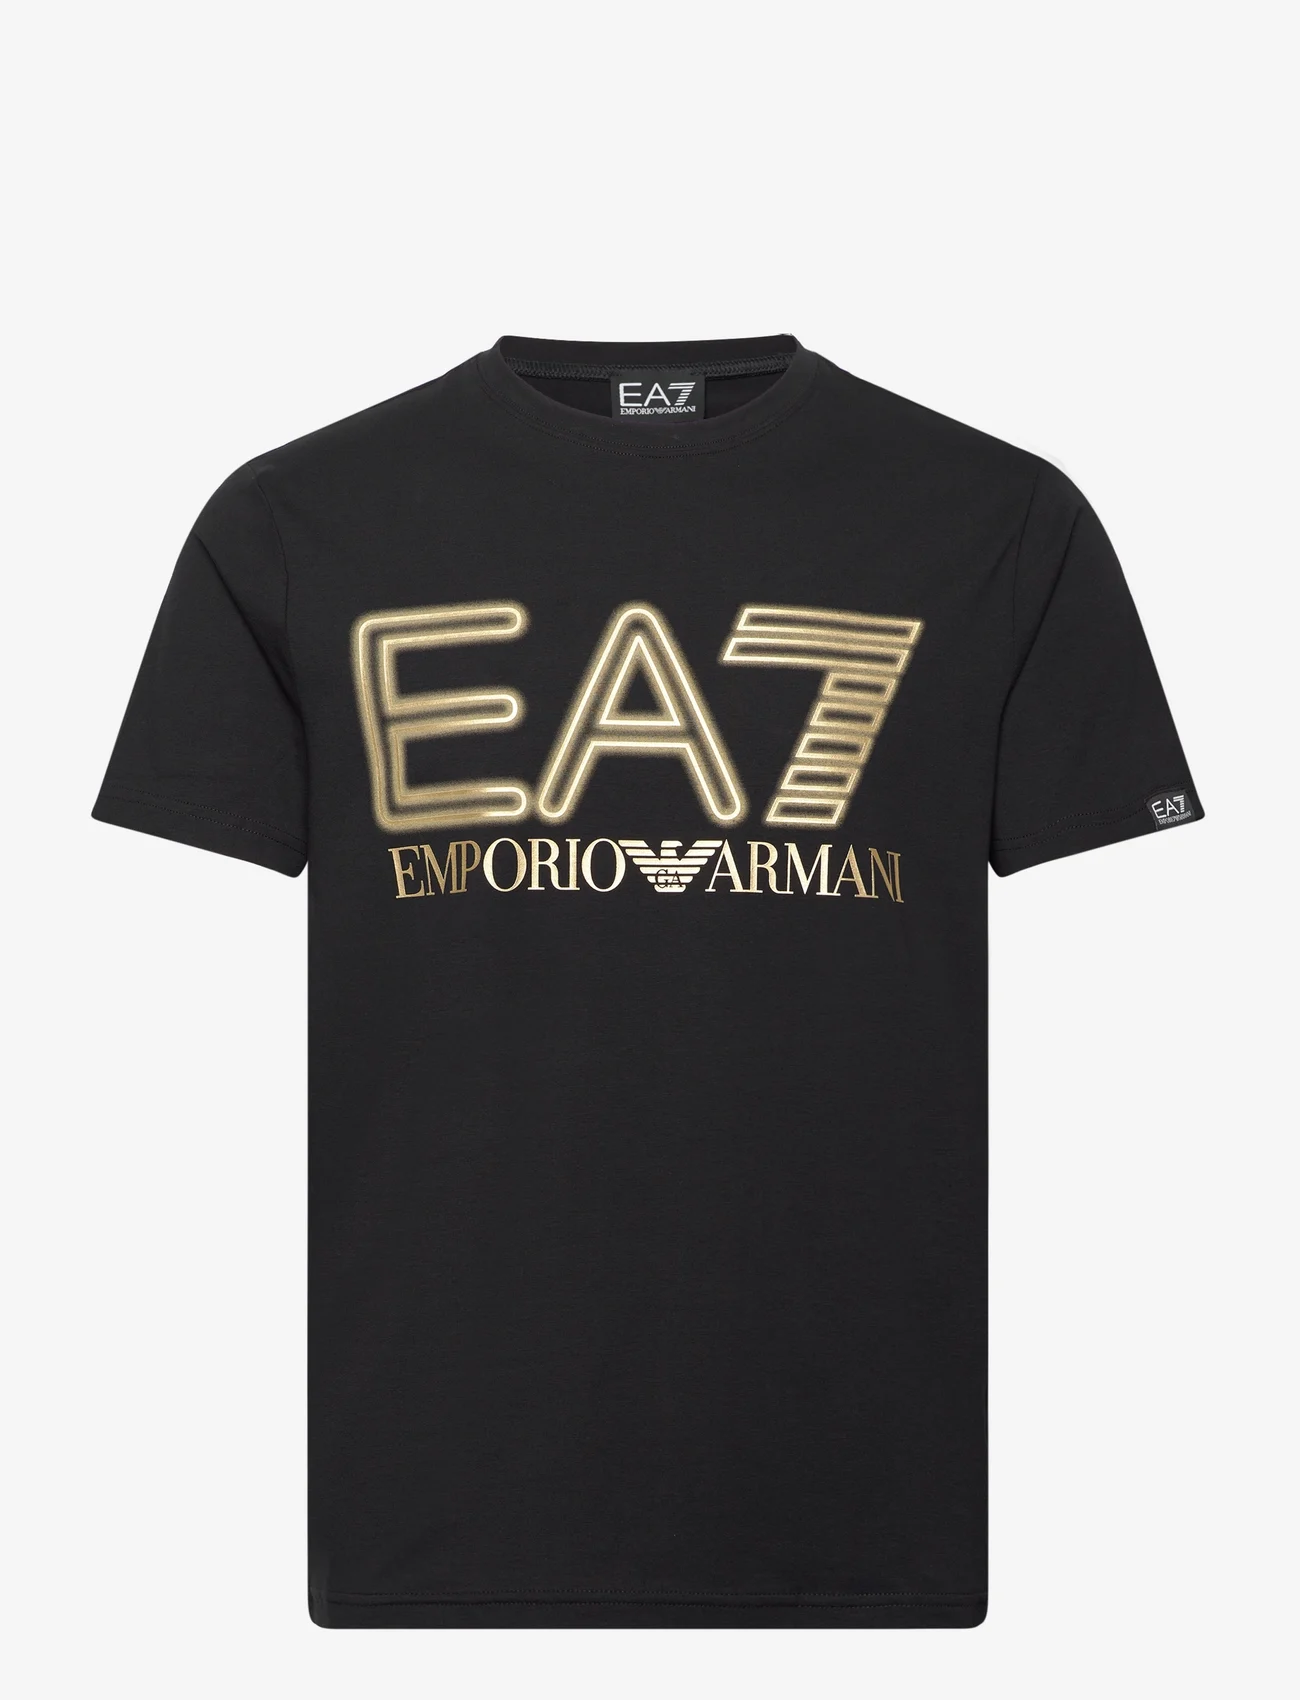 EA7 - T-SHIRT - kortermede t-skjorter - black - 0